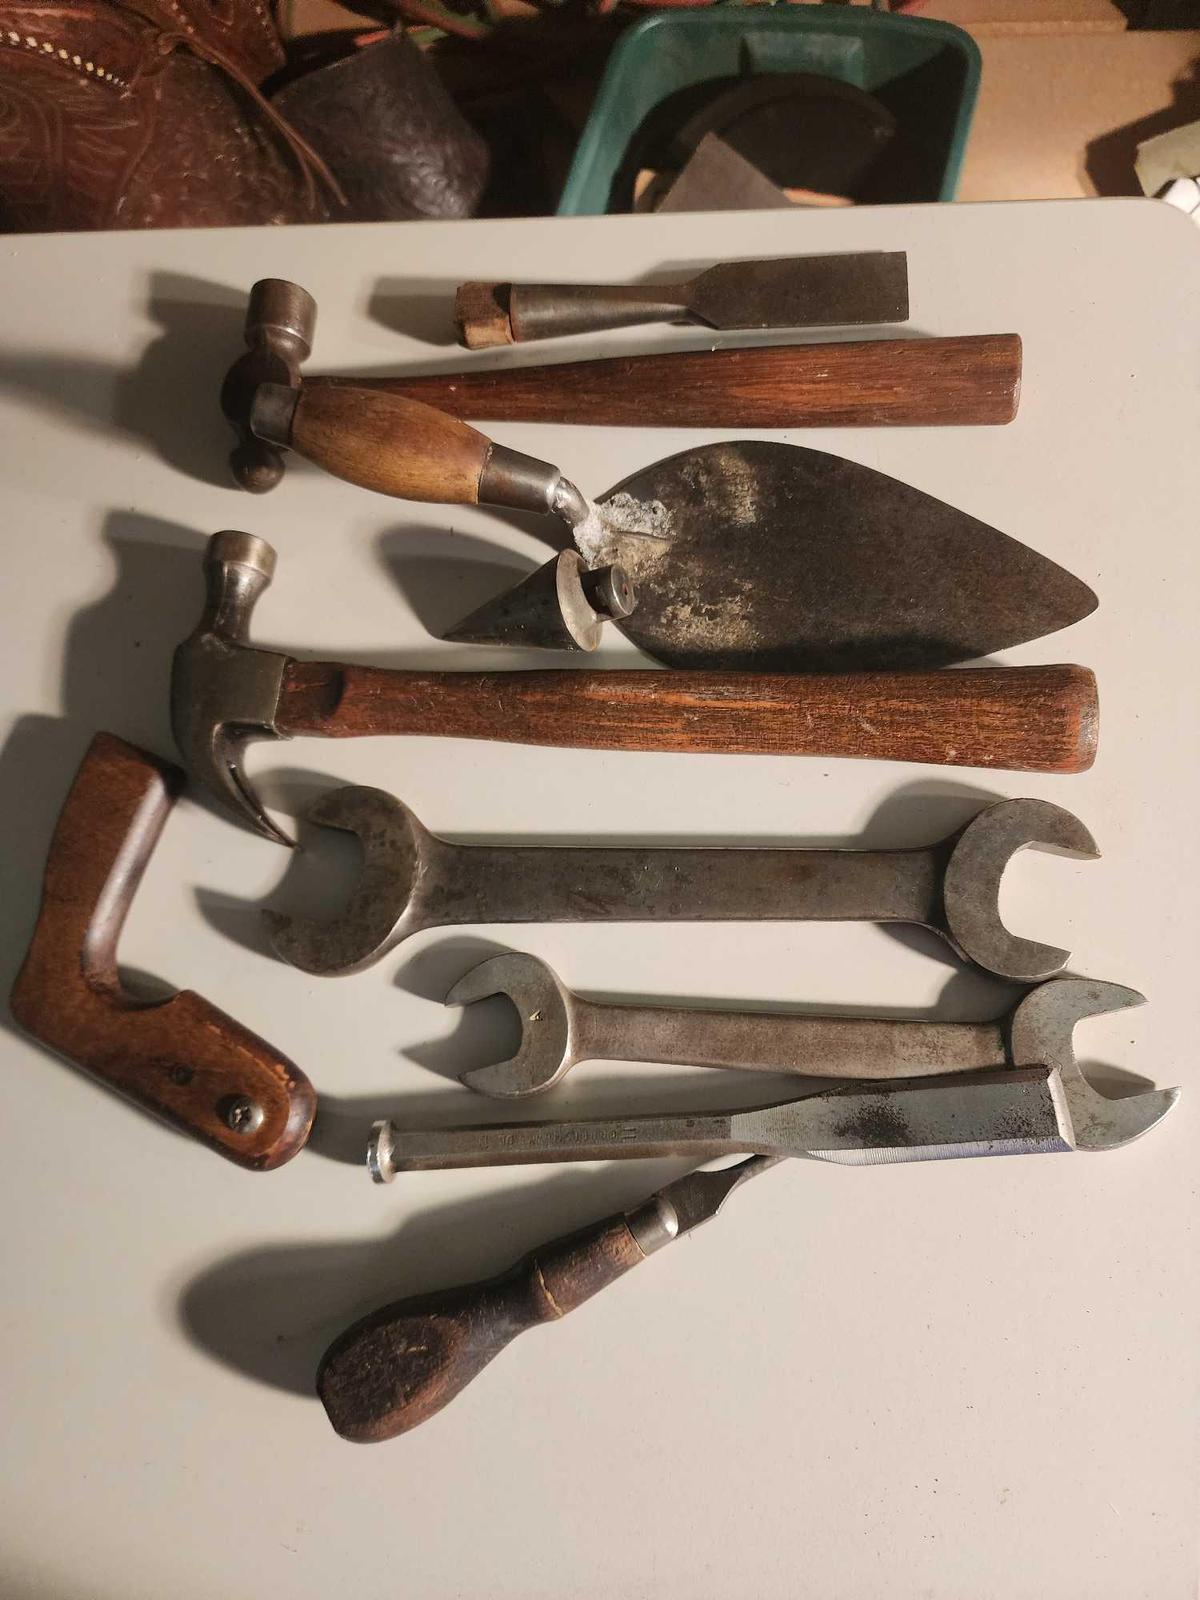 Two hammers, plumb bob, chisels, etc.